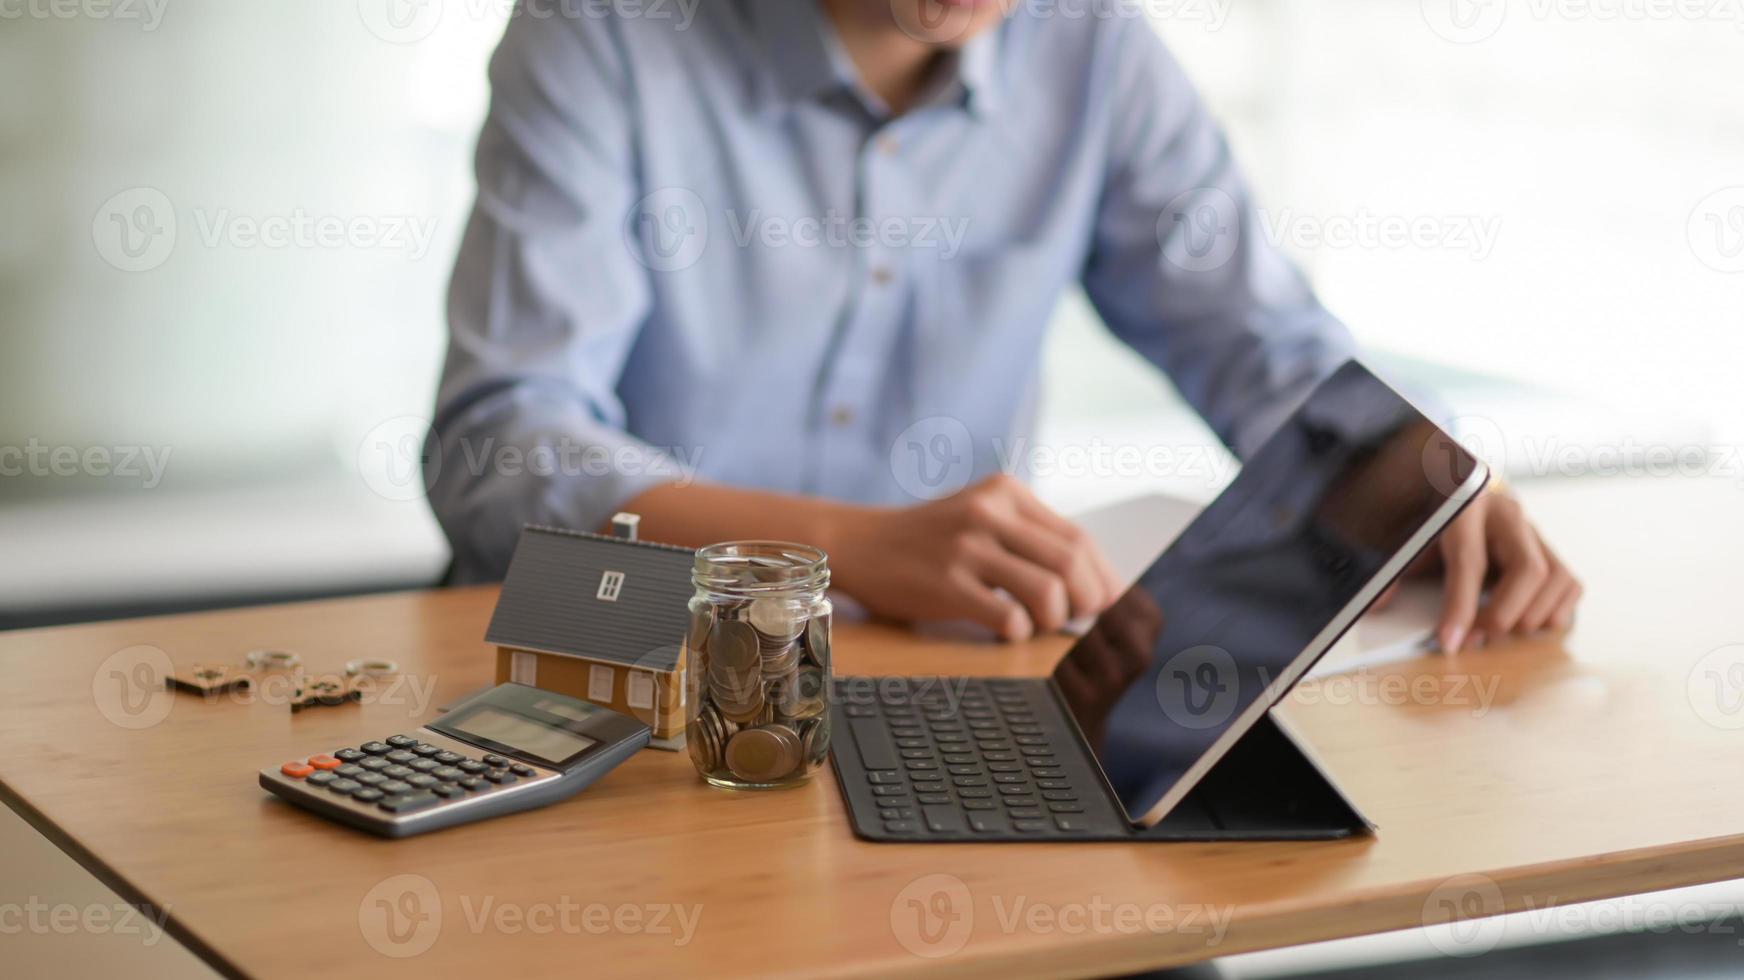 computadora portátil, moneda en una botella de vidrio, calculadora con una casa modelo sobre la mesa y un fondo borroso gente sentada mirando documentos. foto